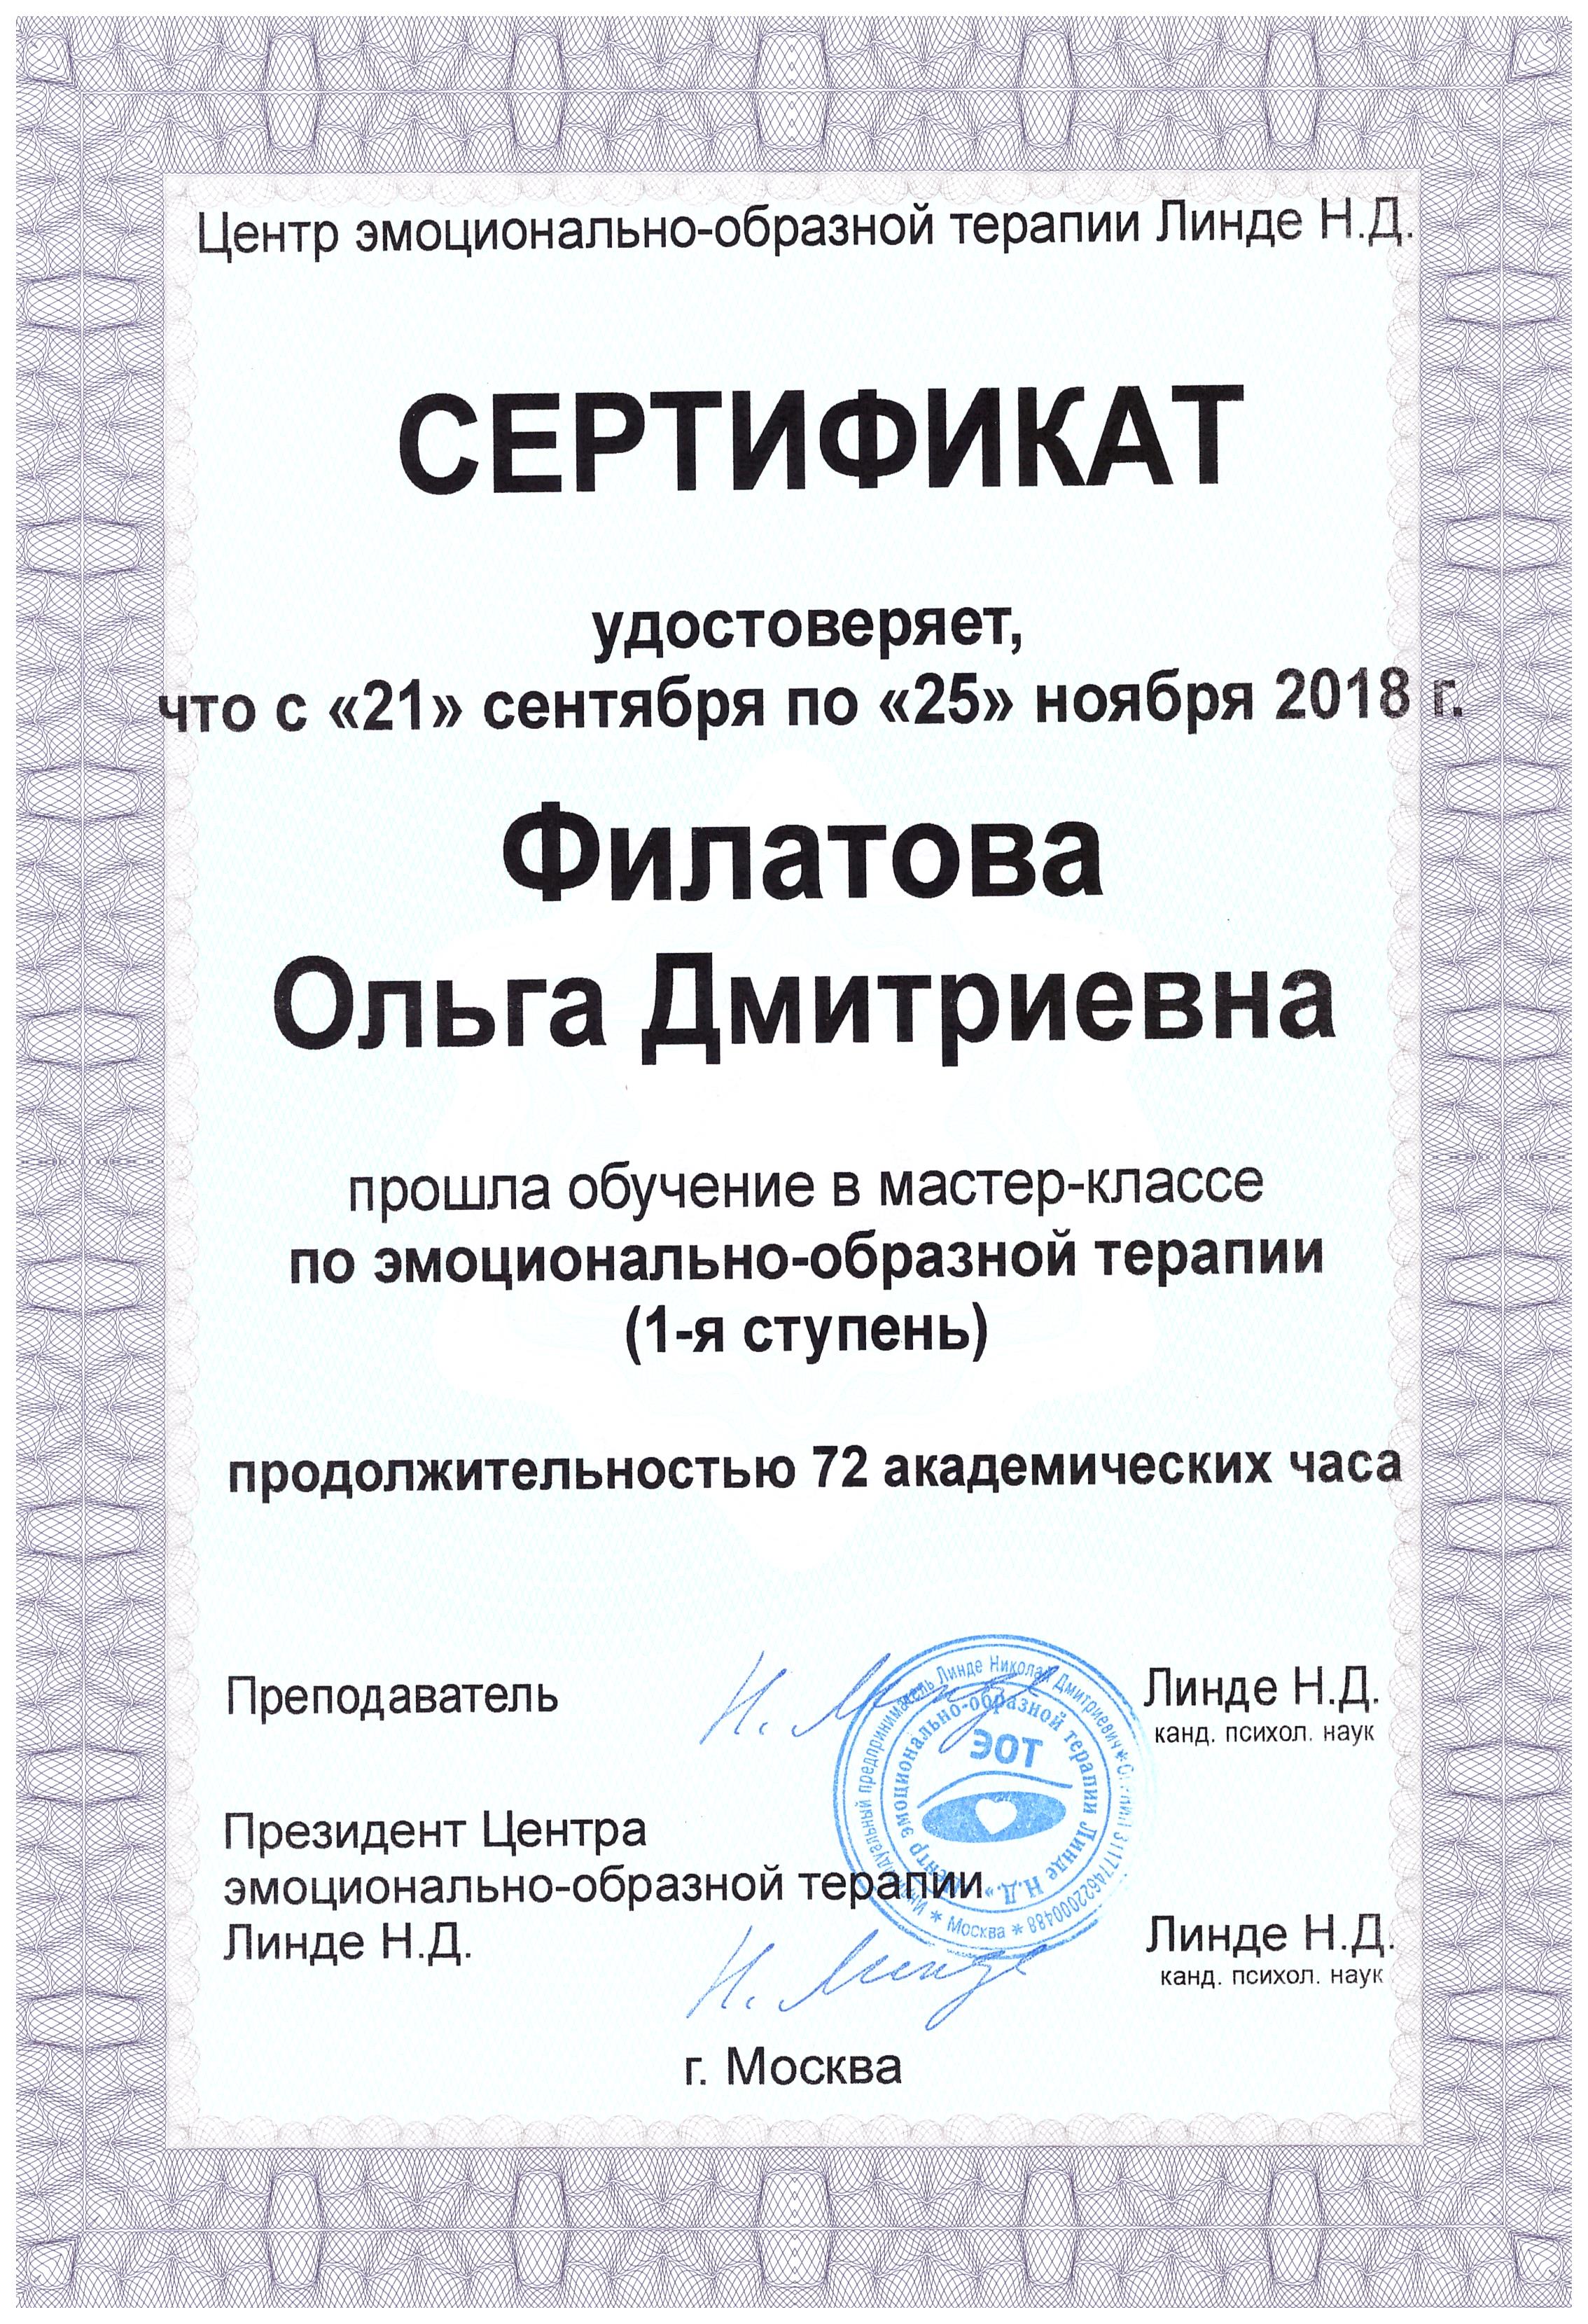 ЭОТ Линде Д.Н. сертификат 1-я ступень, осень 2018 г.